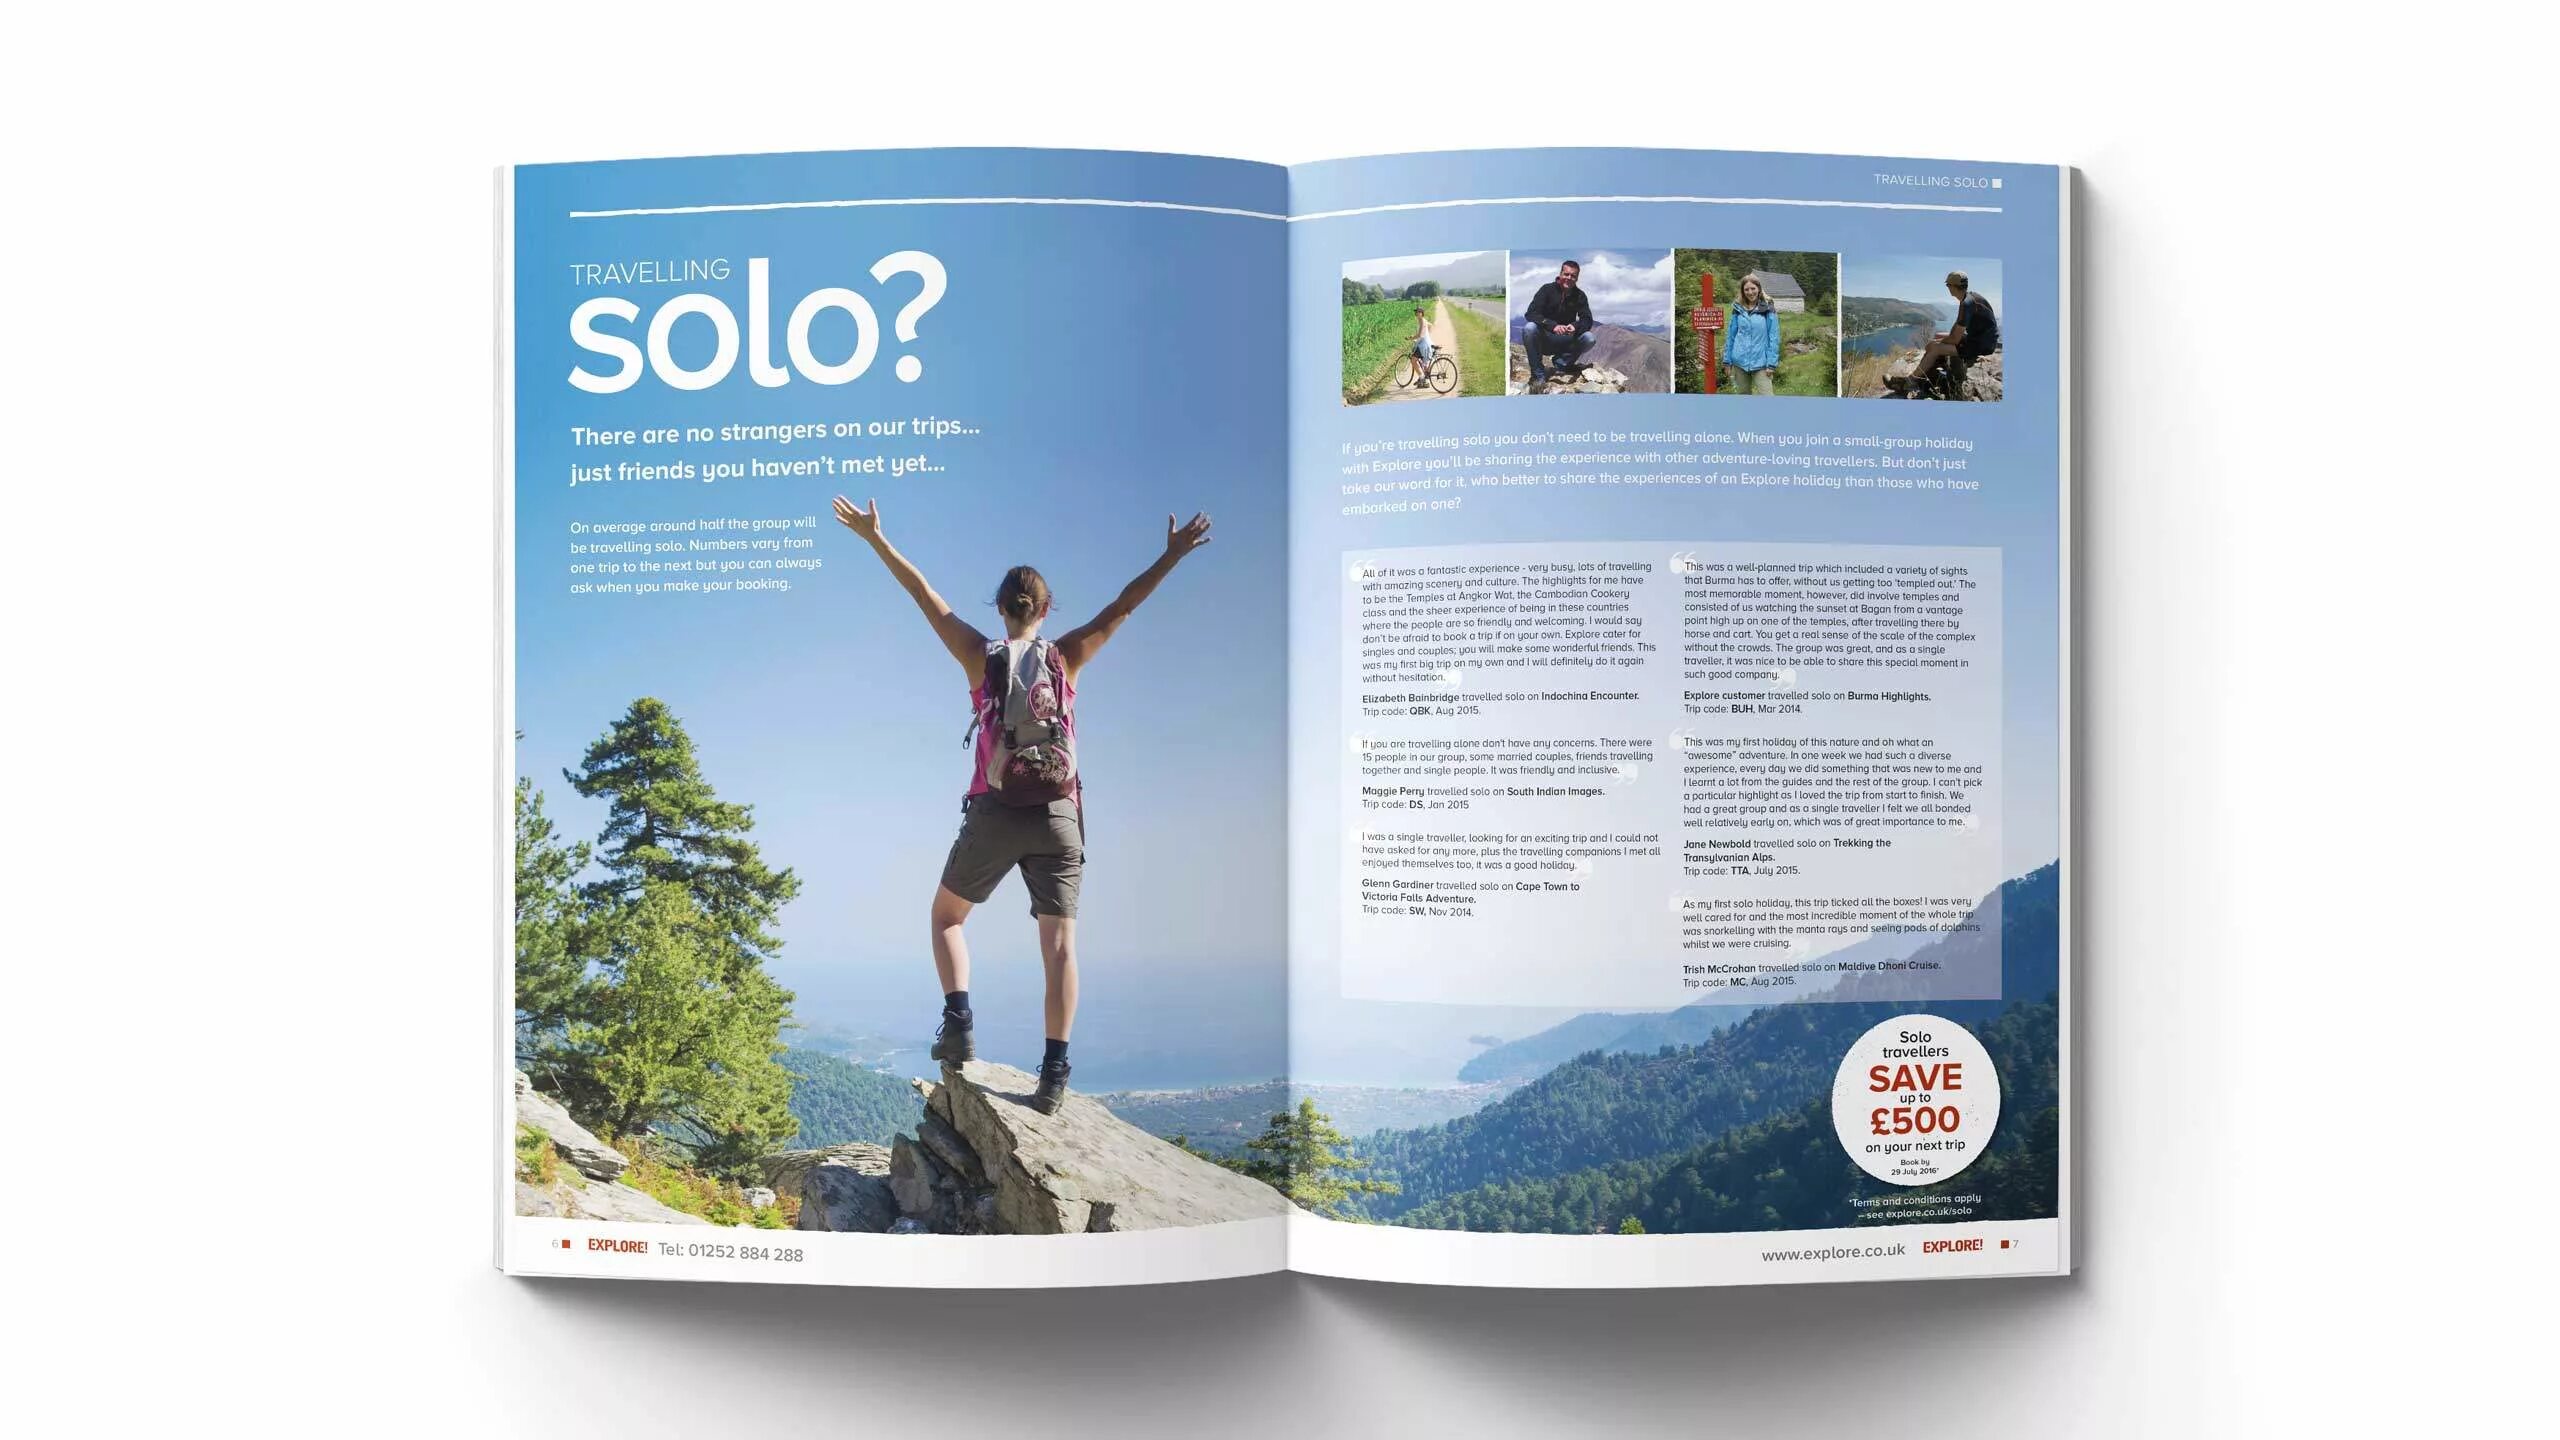 Журнал о путешествиях. Travel Magazine Design. Travel Magazine обложка. Трэвел журнал. Traveling magazine